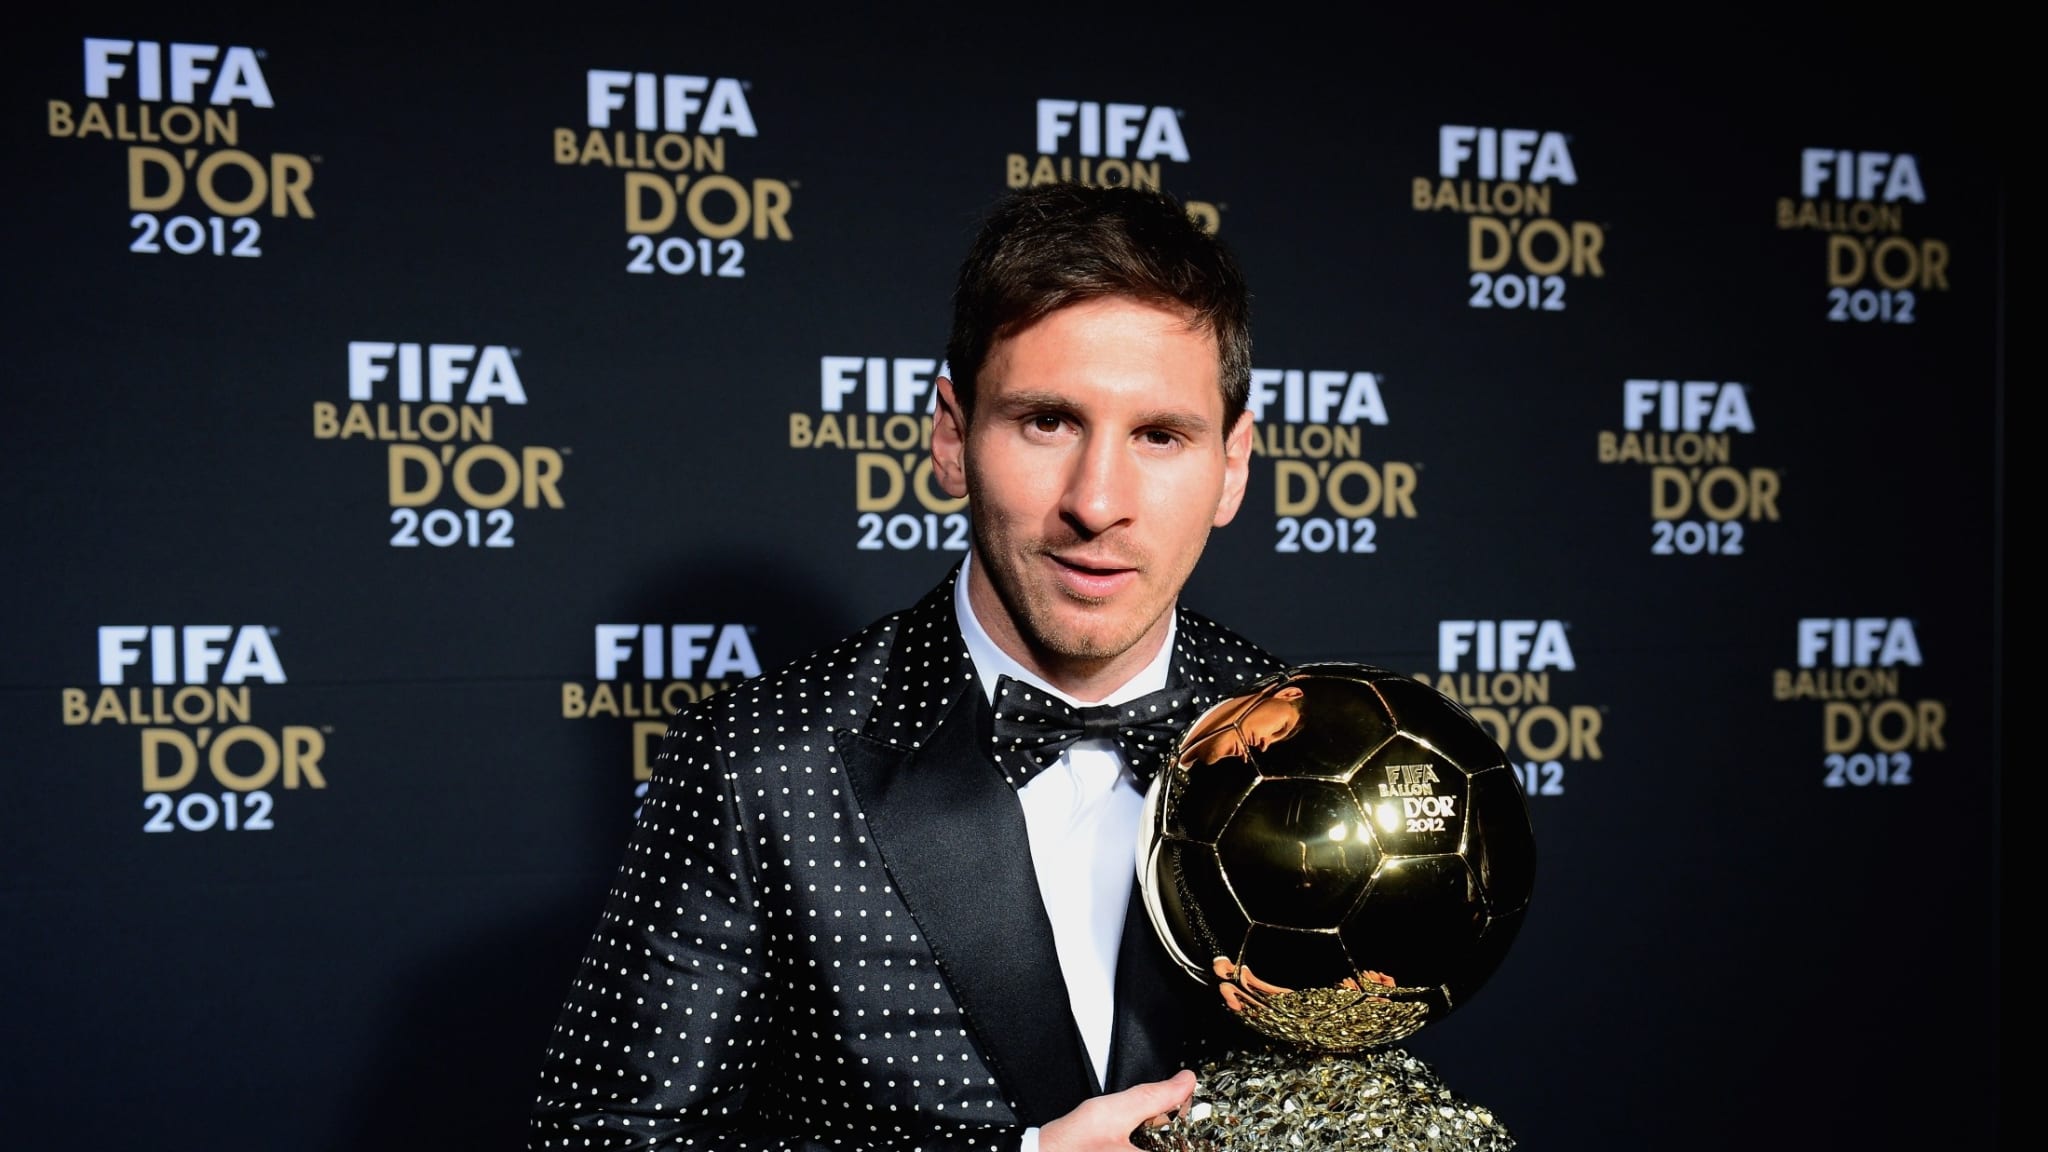 Une photo hilarante de Lionel Messi au Ballon d’Or 2012 fuite sur les réseaux sociaux